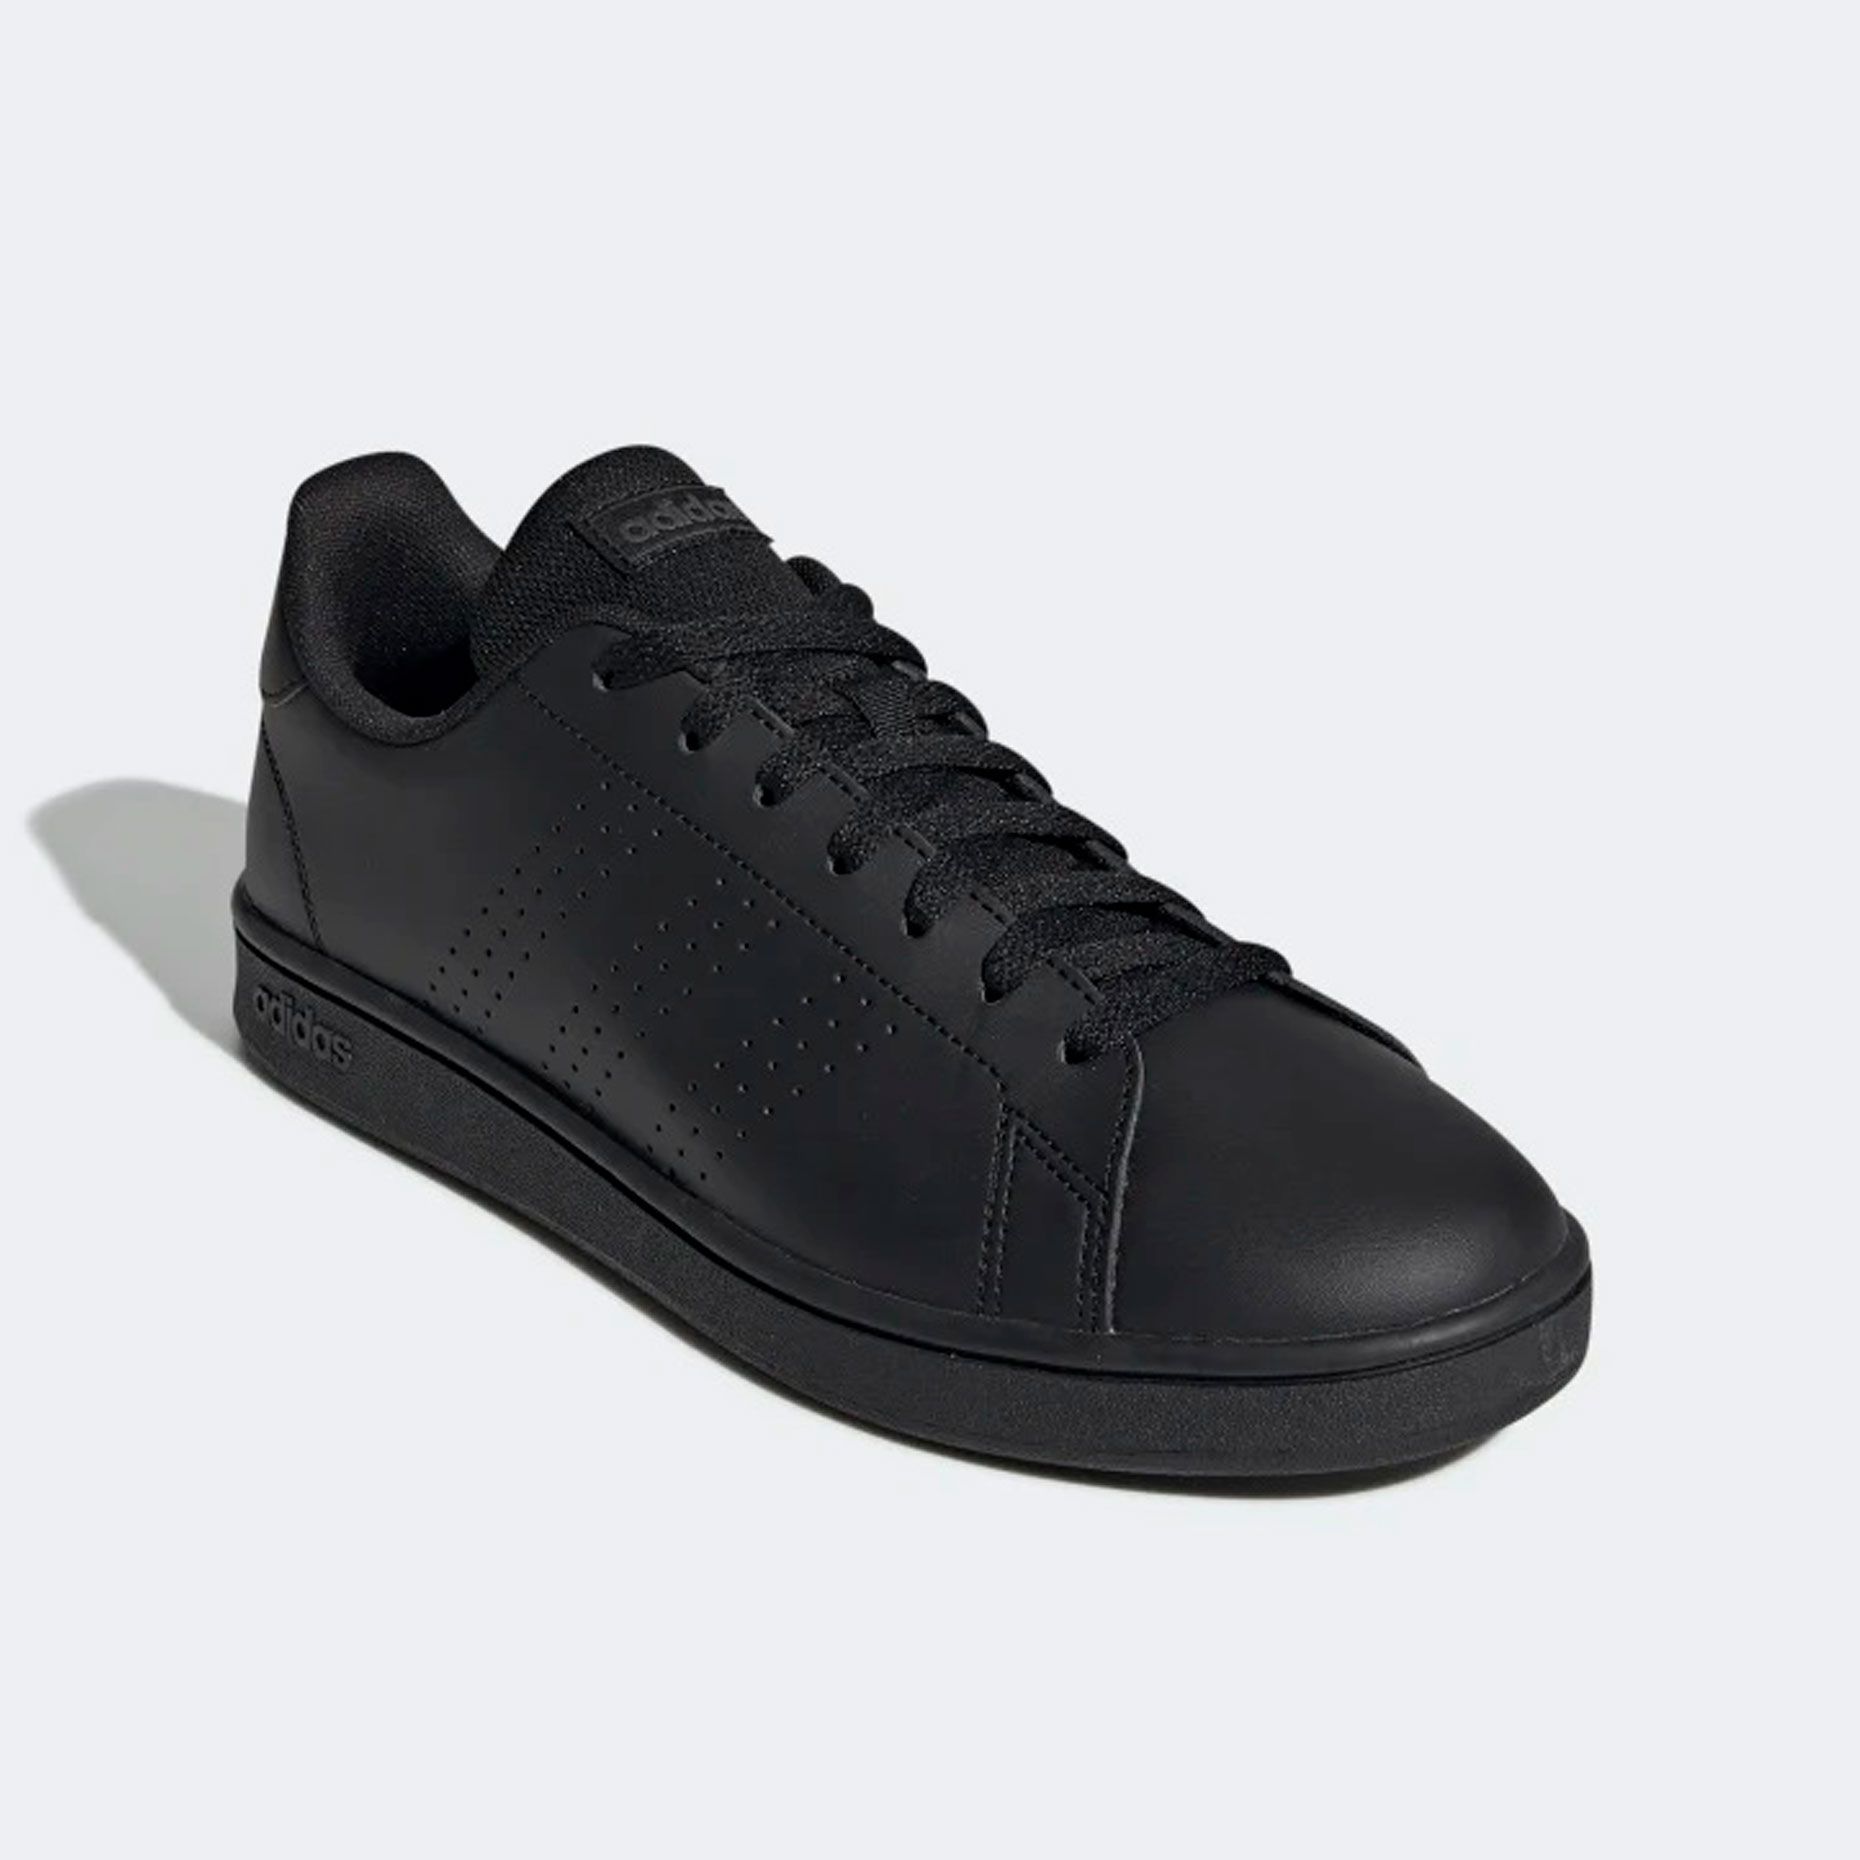 Adidas / кроссовки VL Court 2.0